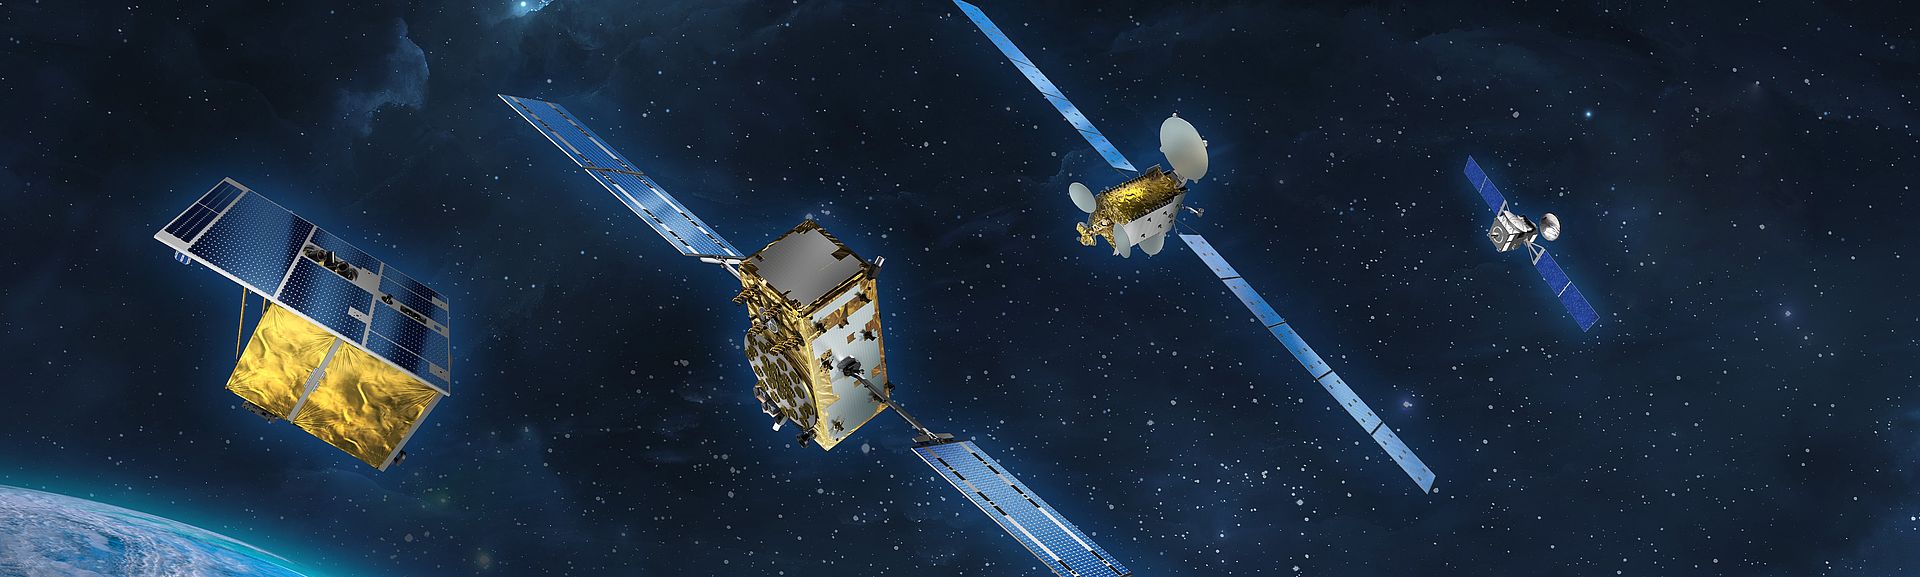 Satelliten in der Raumfahrt